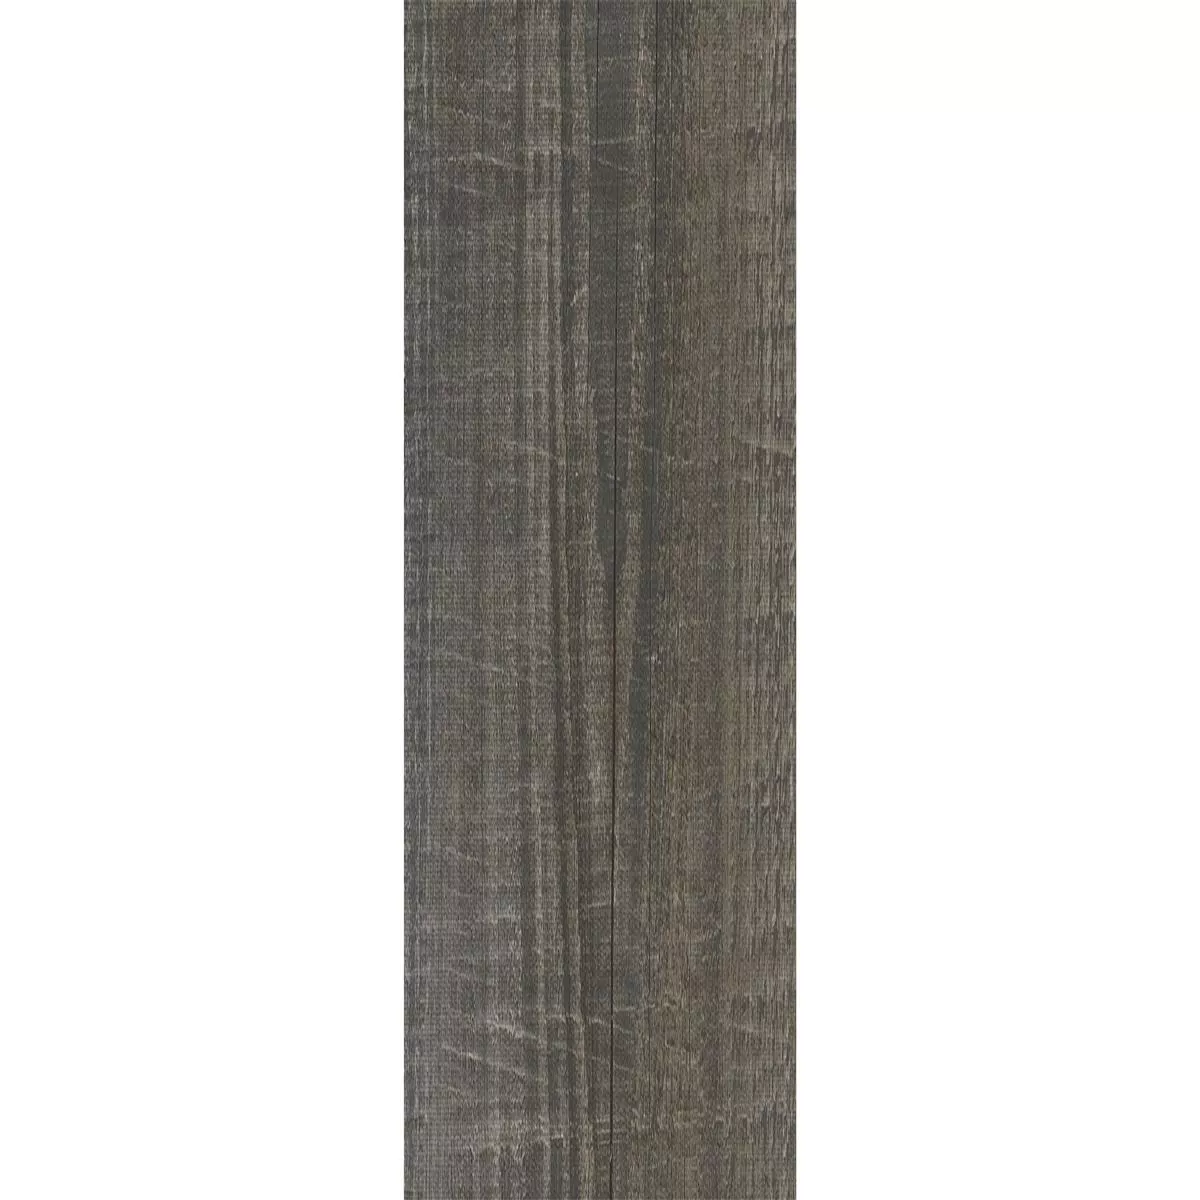 Δάπεδο Από Bινύλιο Σύστημα Κλικ Diors Γκρί Τεφρόχρουν Xρώμα 17,2x121cm